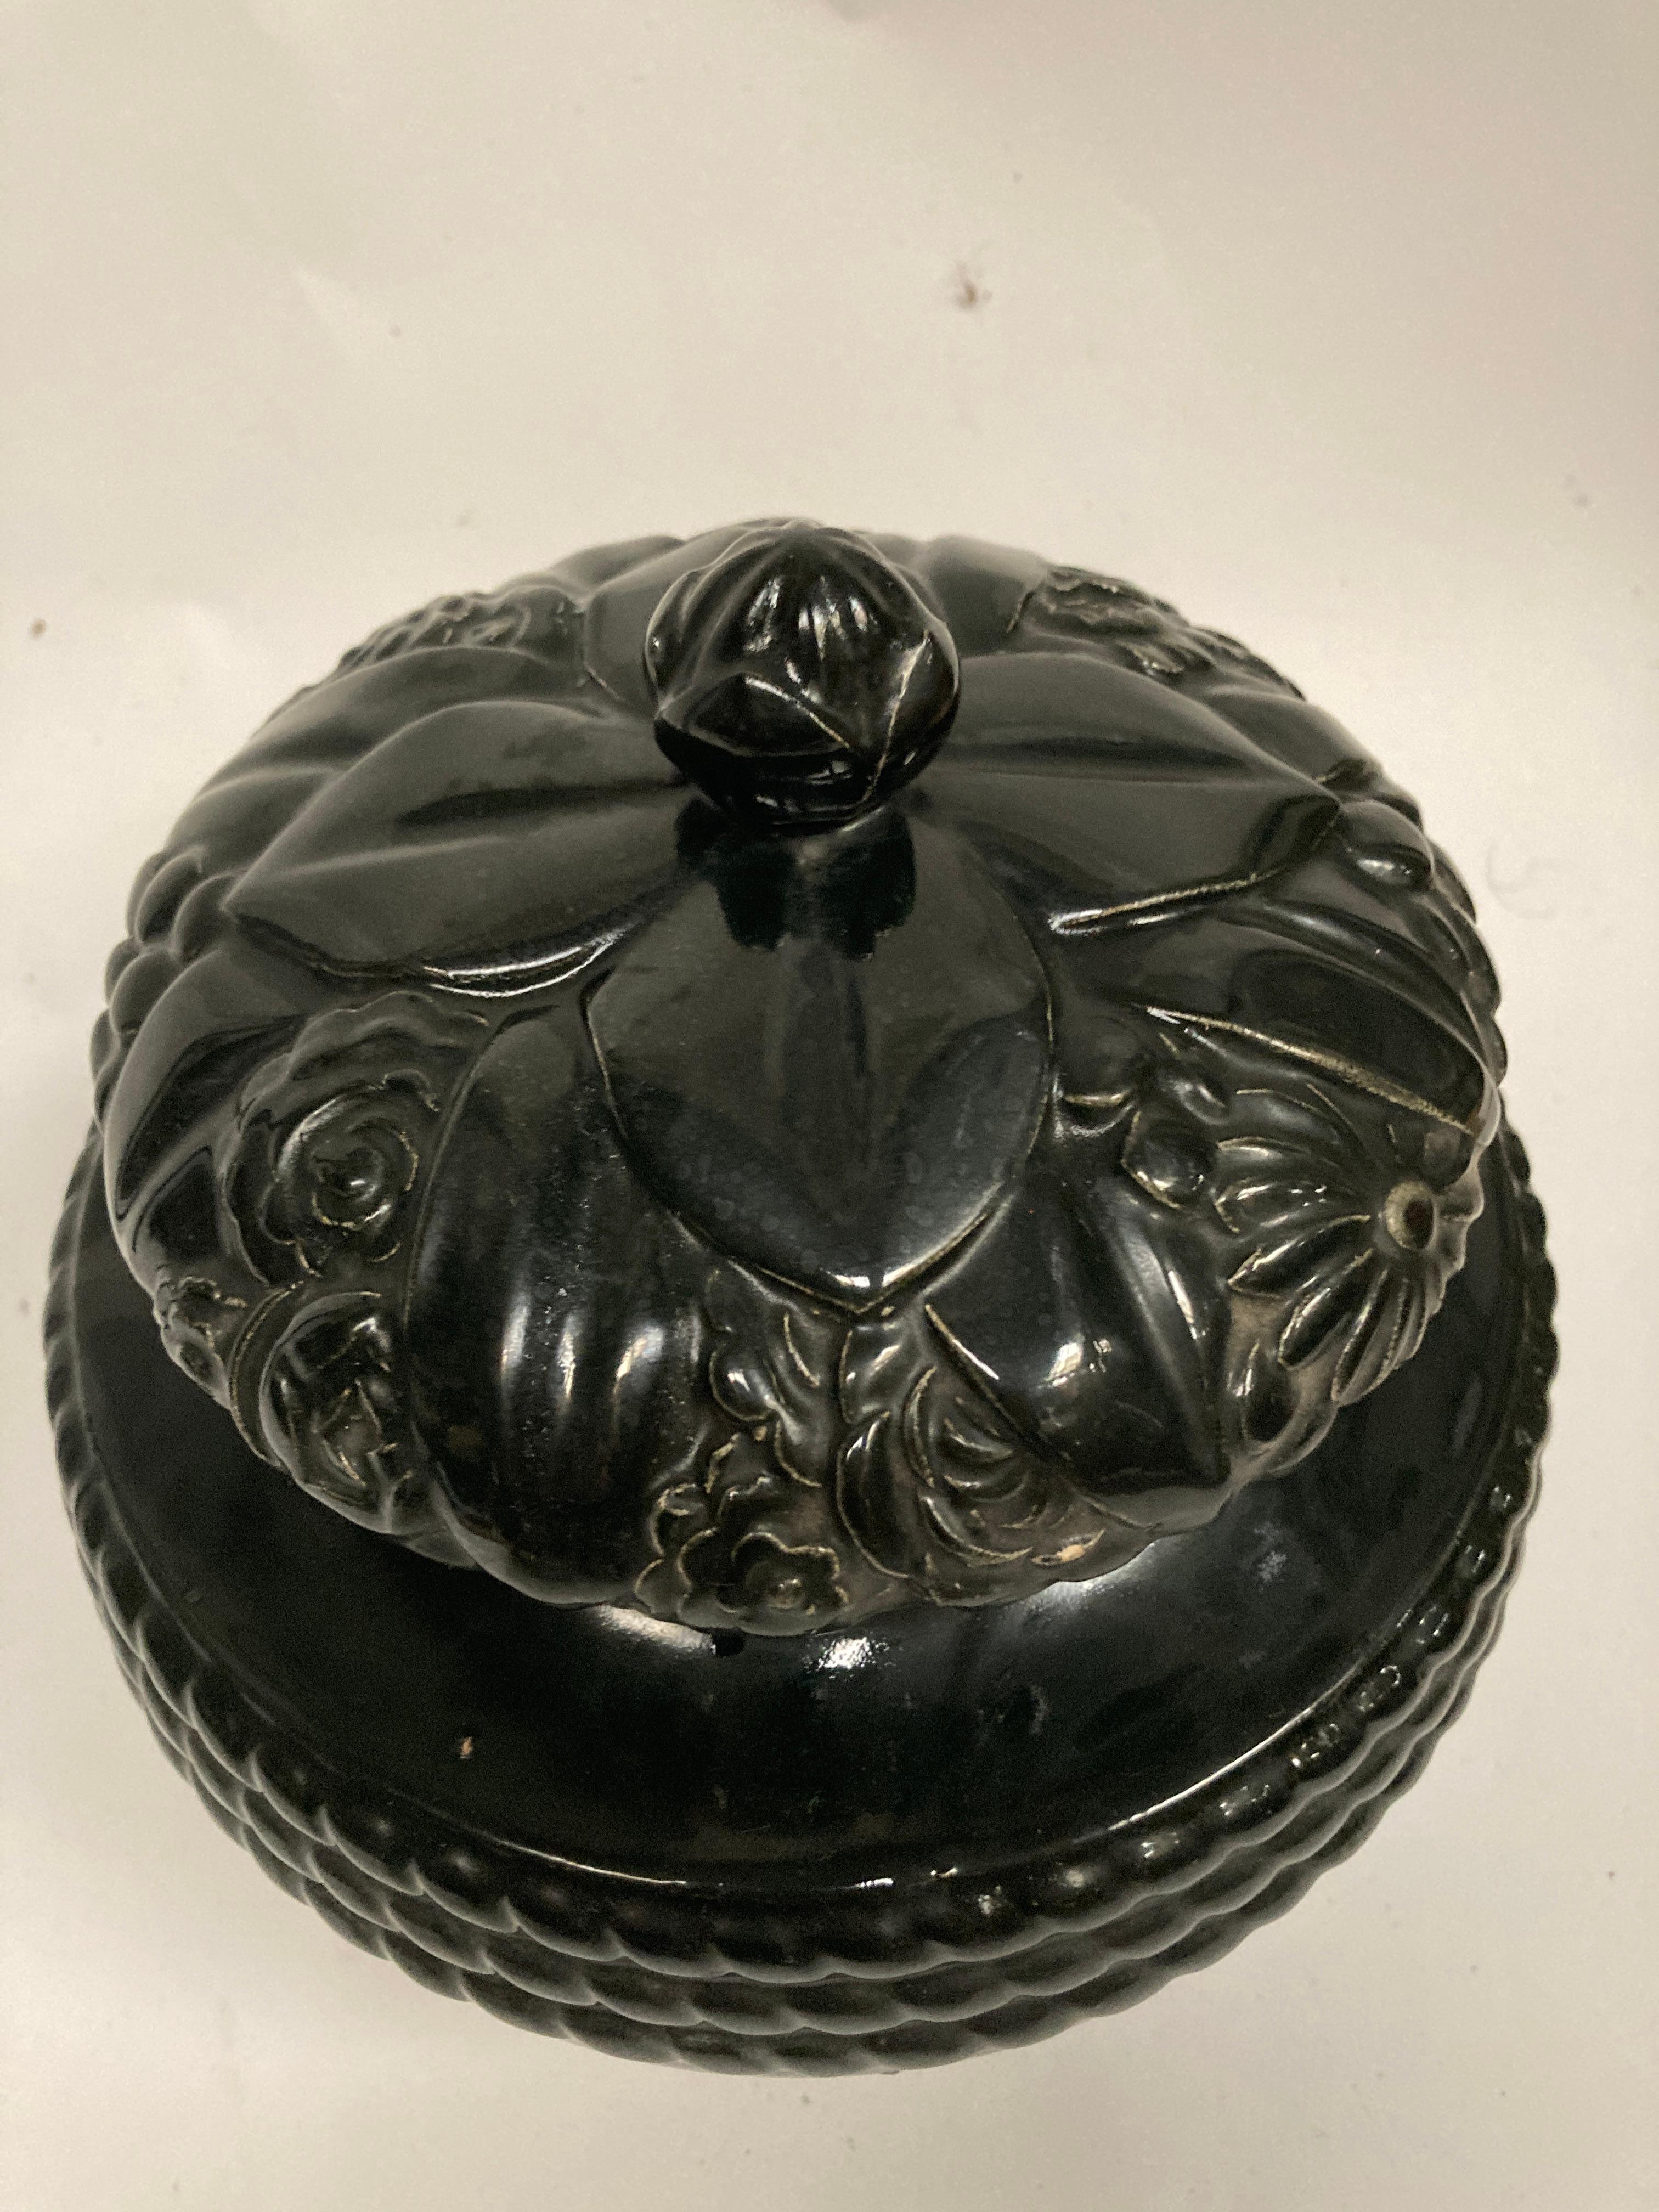 Seltene Urne oder Vase aus Keramik, um 1925 von den französischen Künstlern Louis Sue und André Mare entworfen 
Dokumentiert